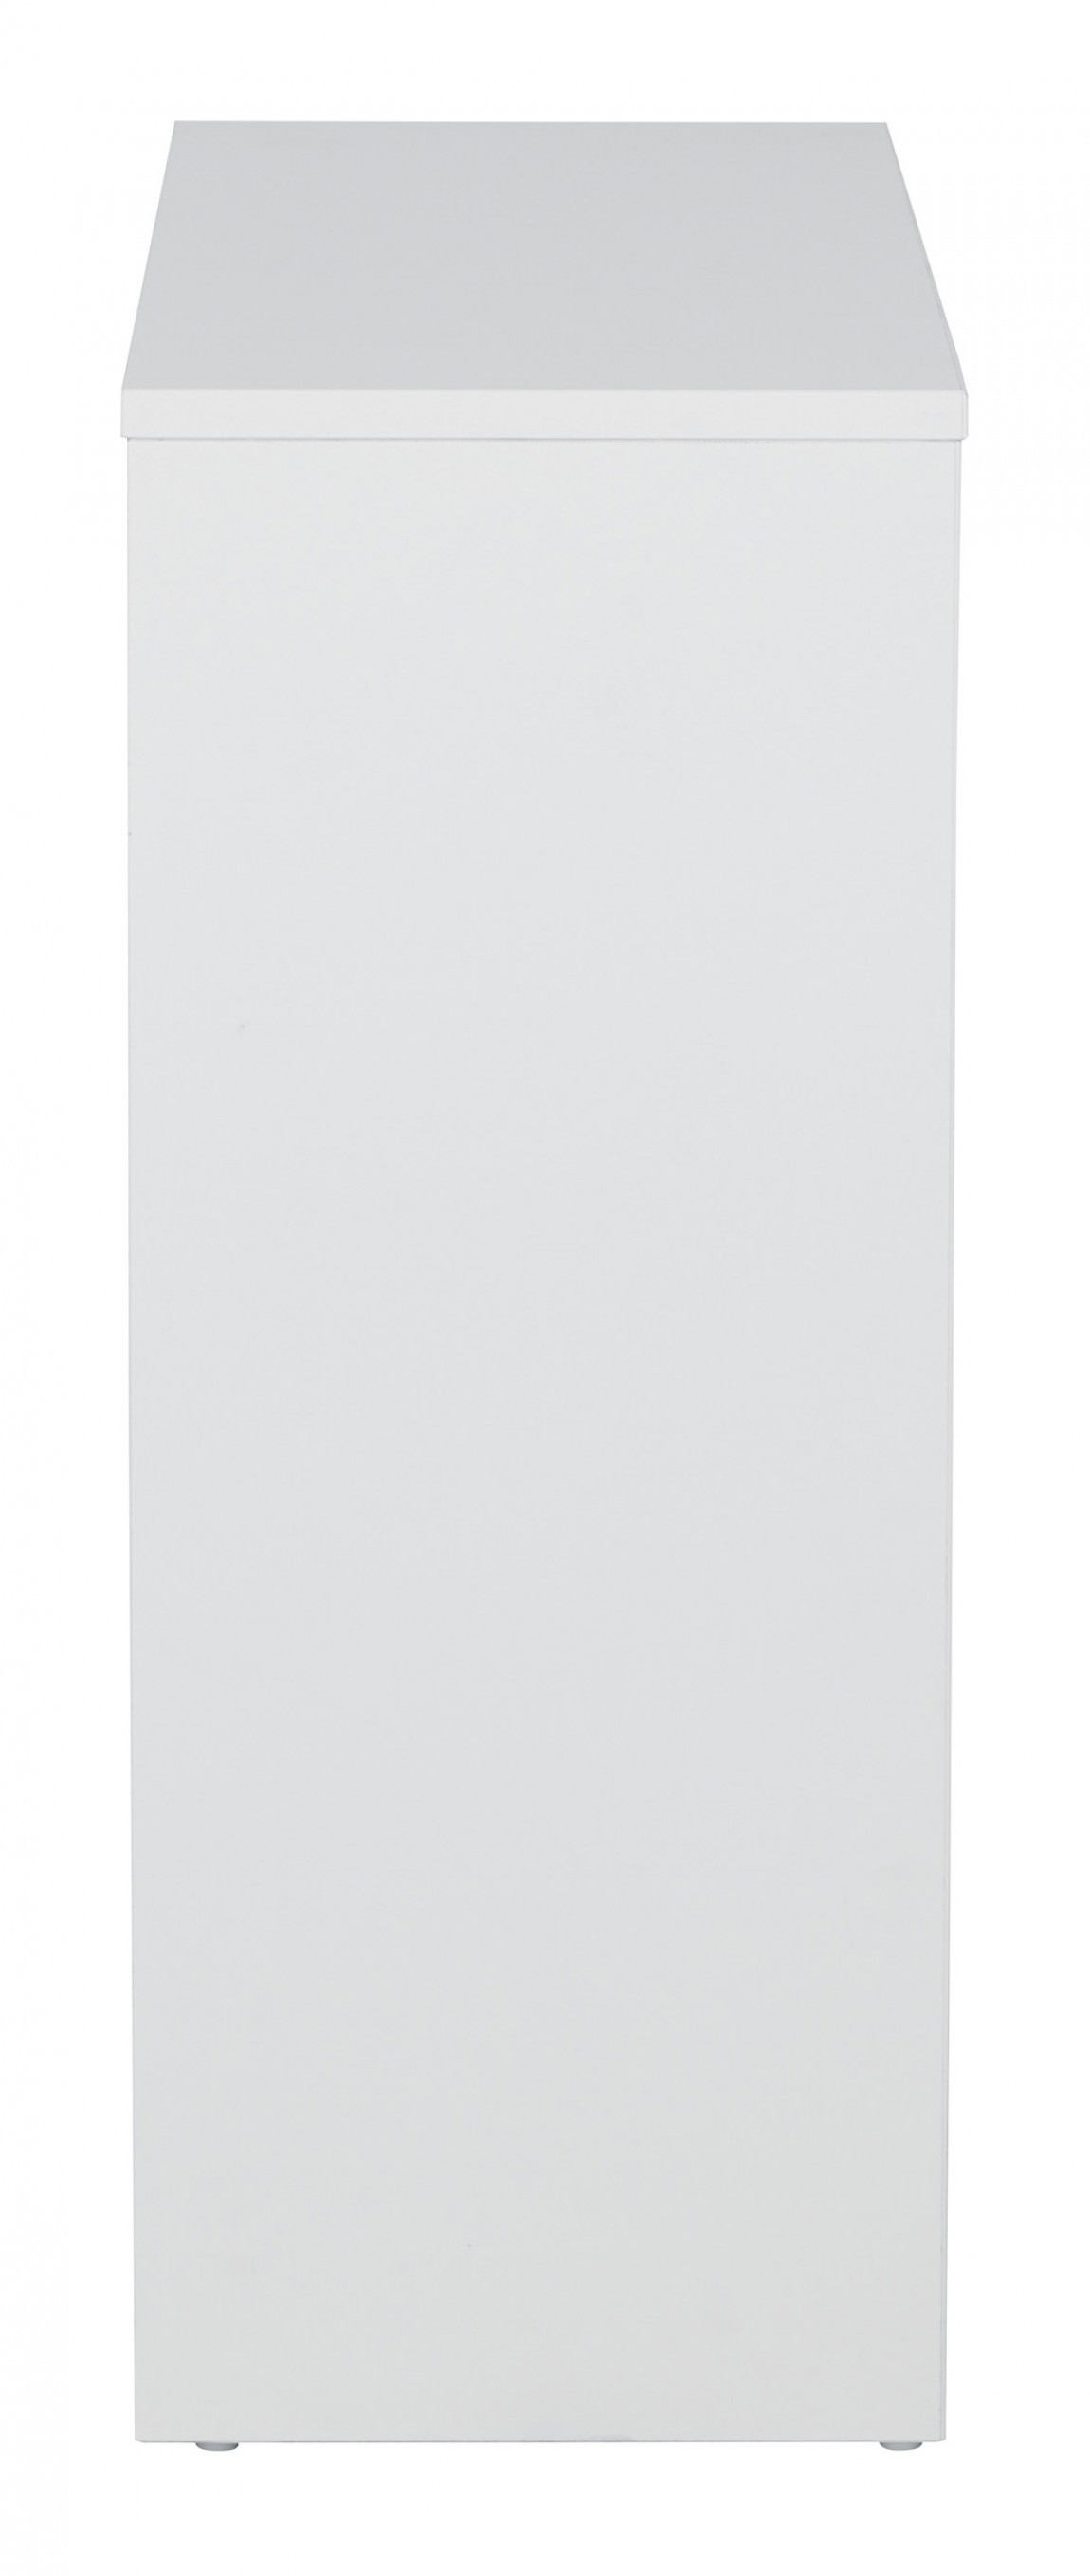 White Prado Two-Shelf Bookcase : PRD3230-___ | Prado by Office Star ...